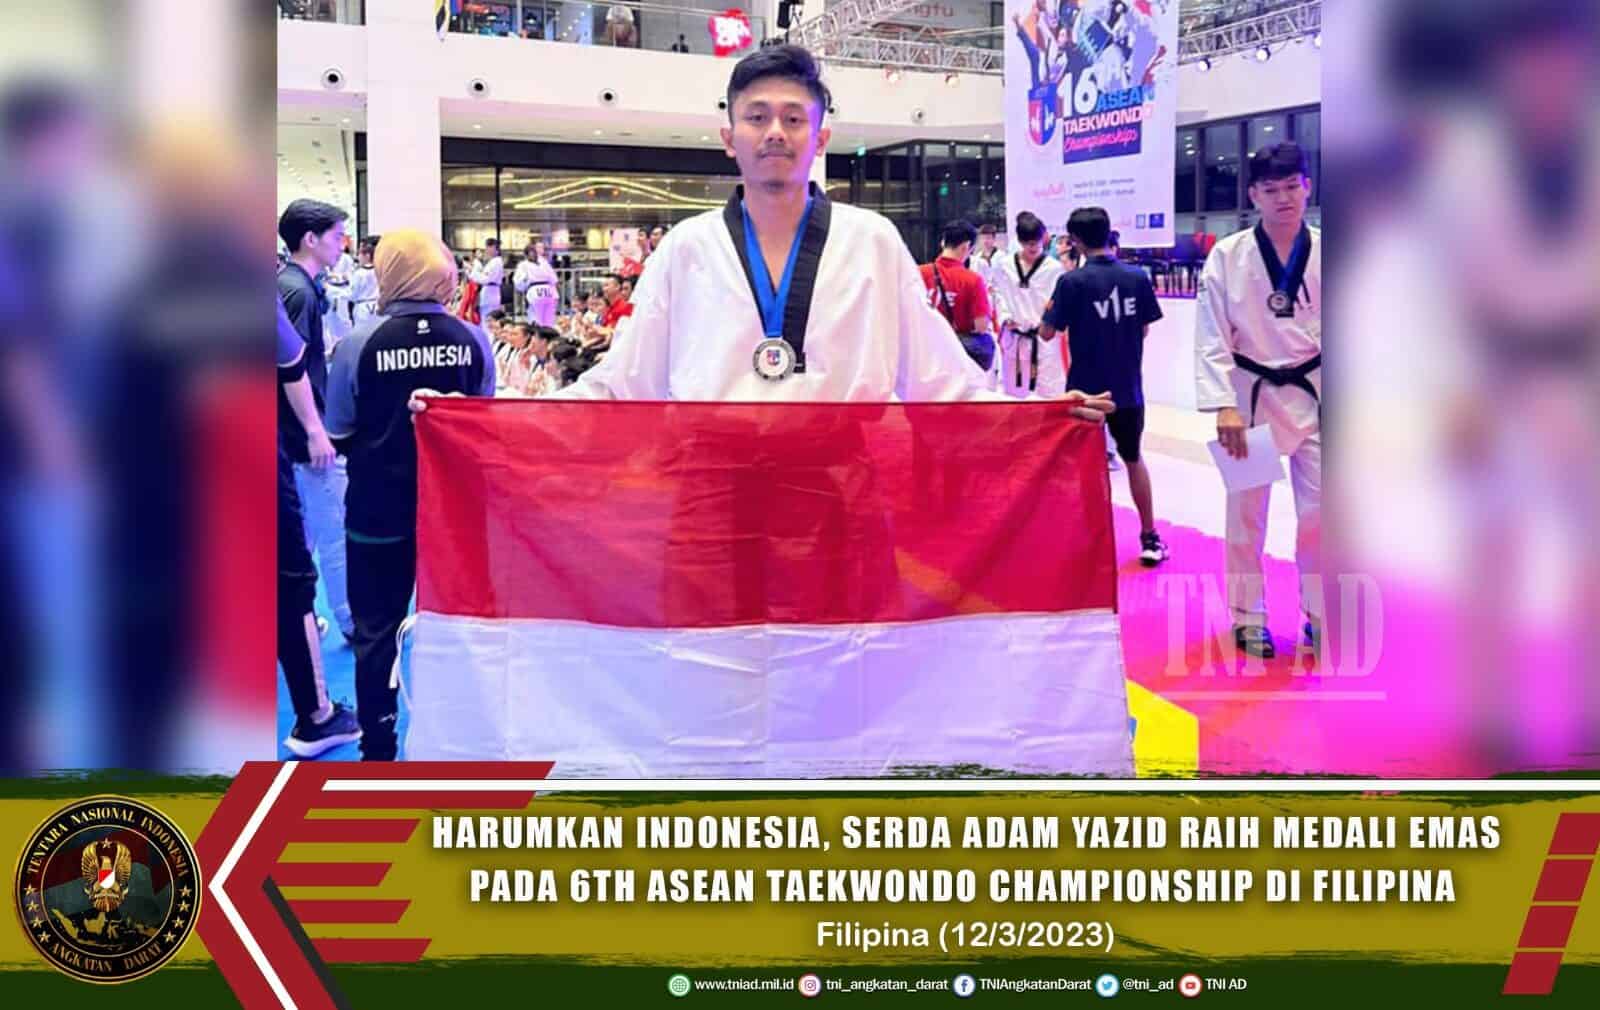 Harumkan Indonesia, Serda Adam Yazid Raih Medali Emas pada 6TH Asean Taekwondo Championship di Filipina